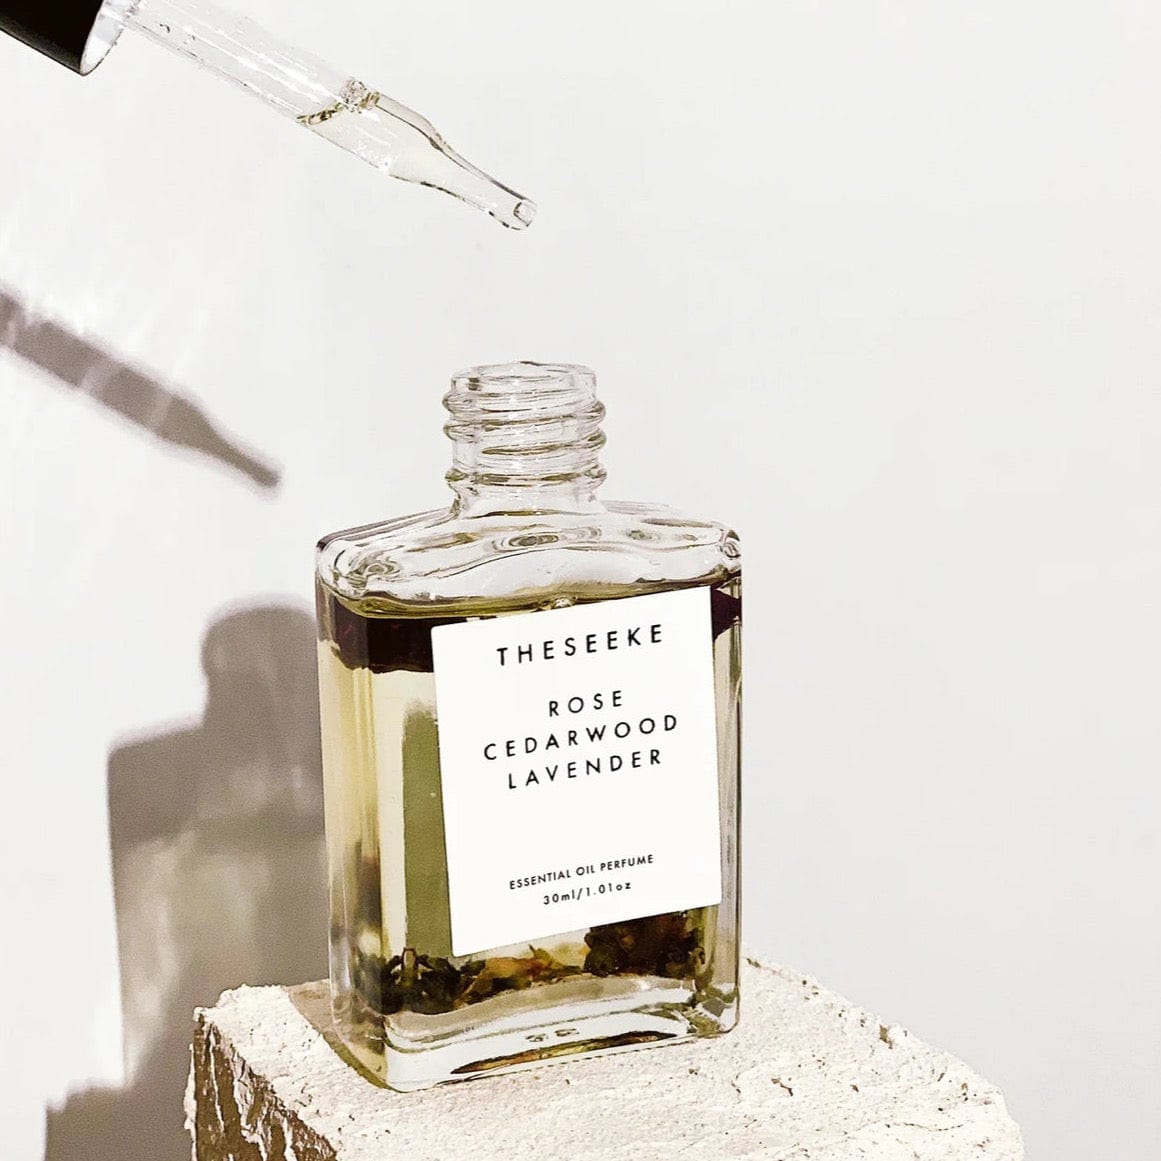 Rose Cedarwood Lavender Oil Perfume by The Seeke